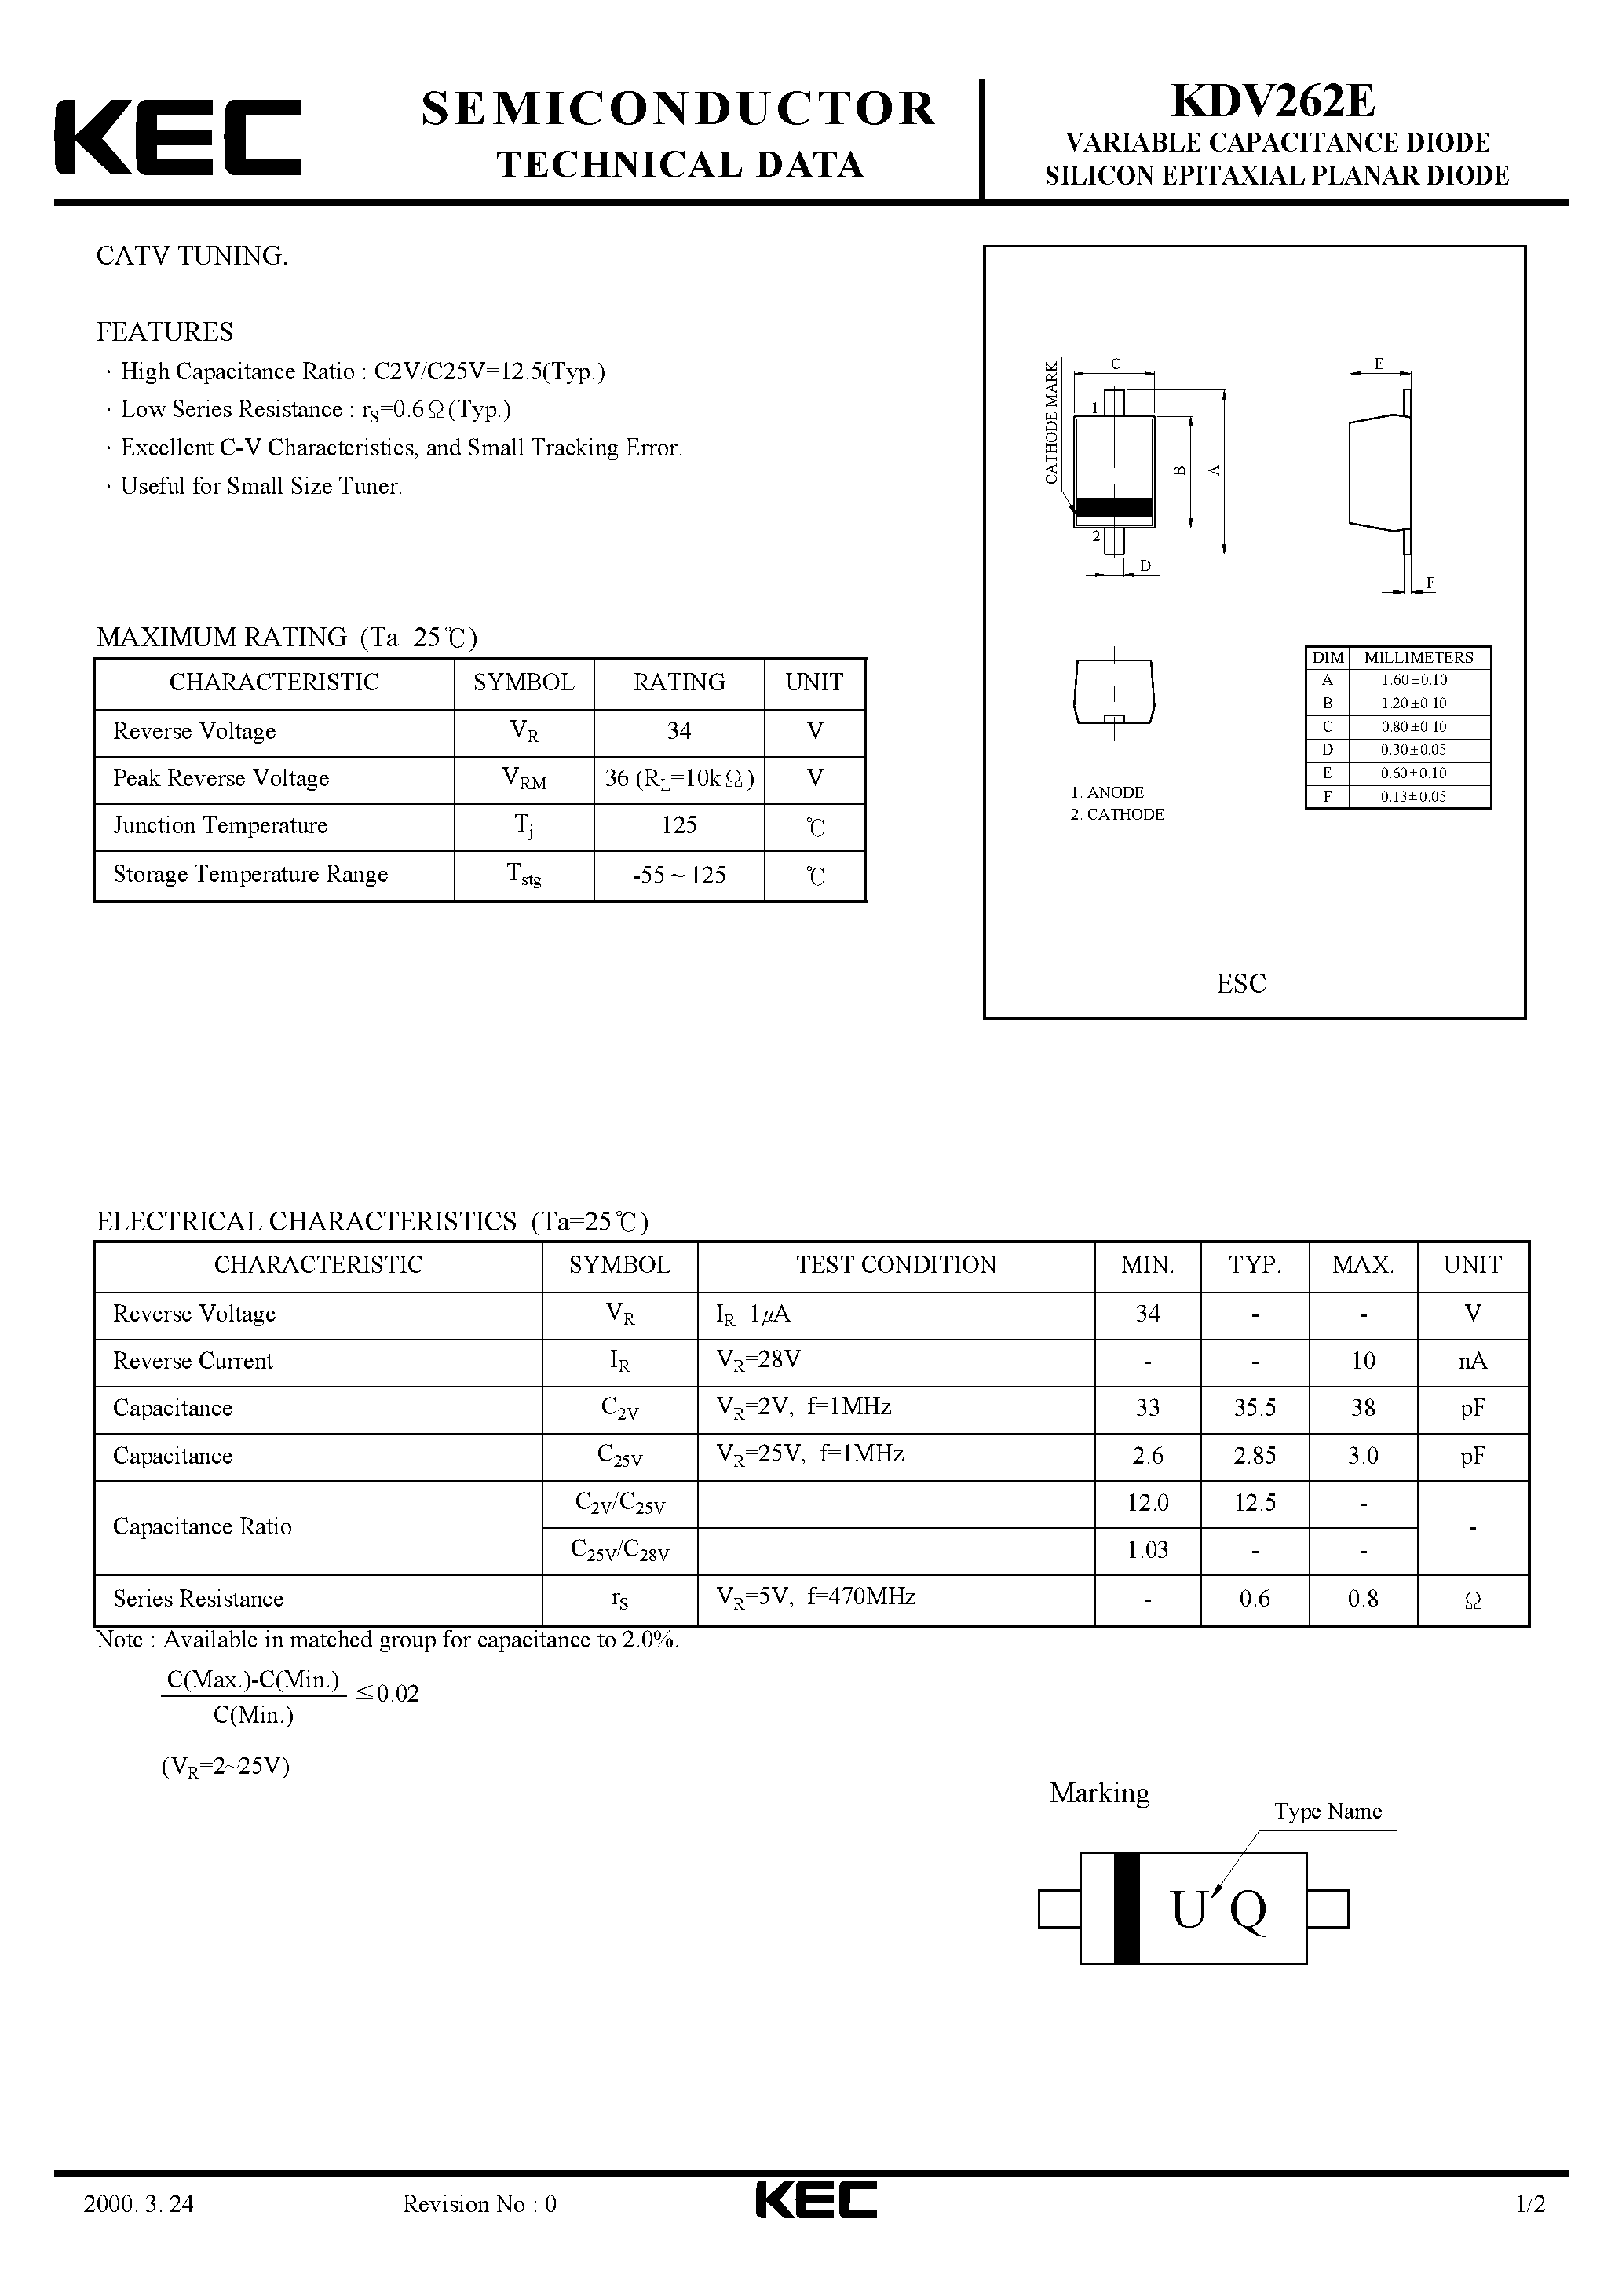 Datasheet KDV262E - VARIABLE CAPACITANCE DIODE SILICON EPITAXIAL PLANAR DIODE(CATV TUNING) page 1